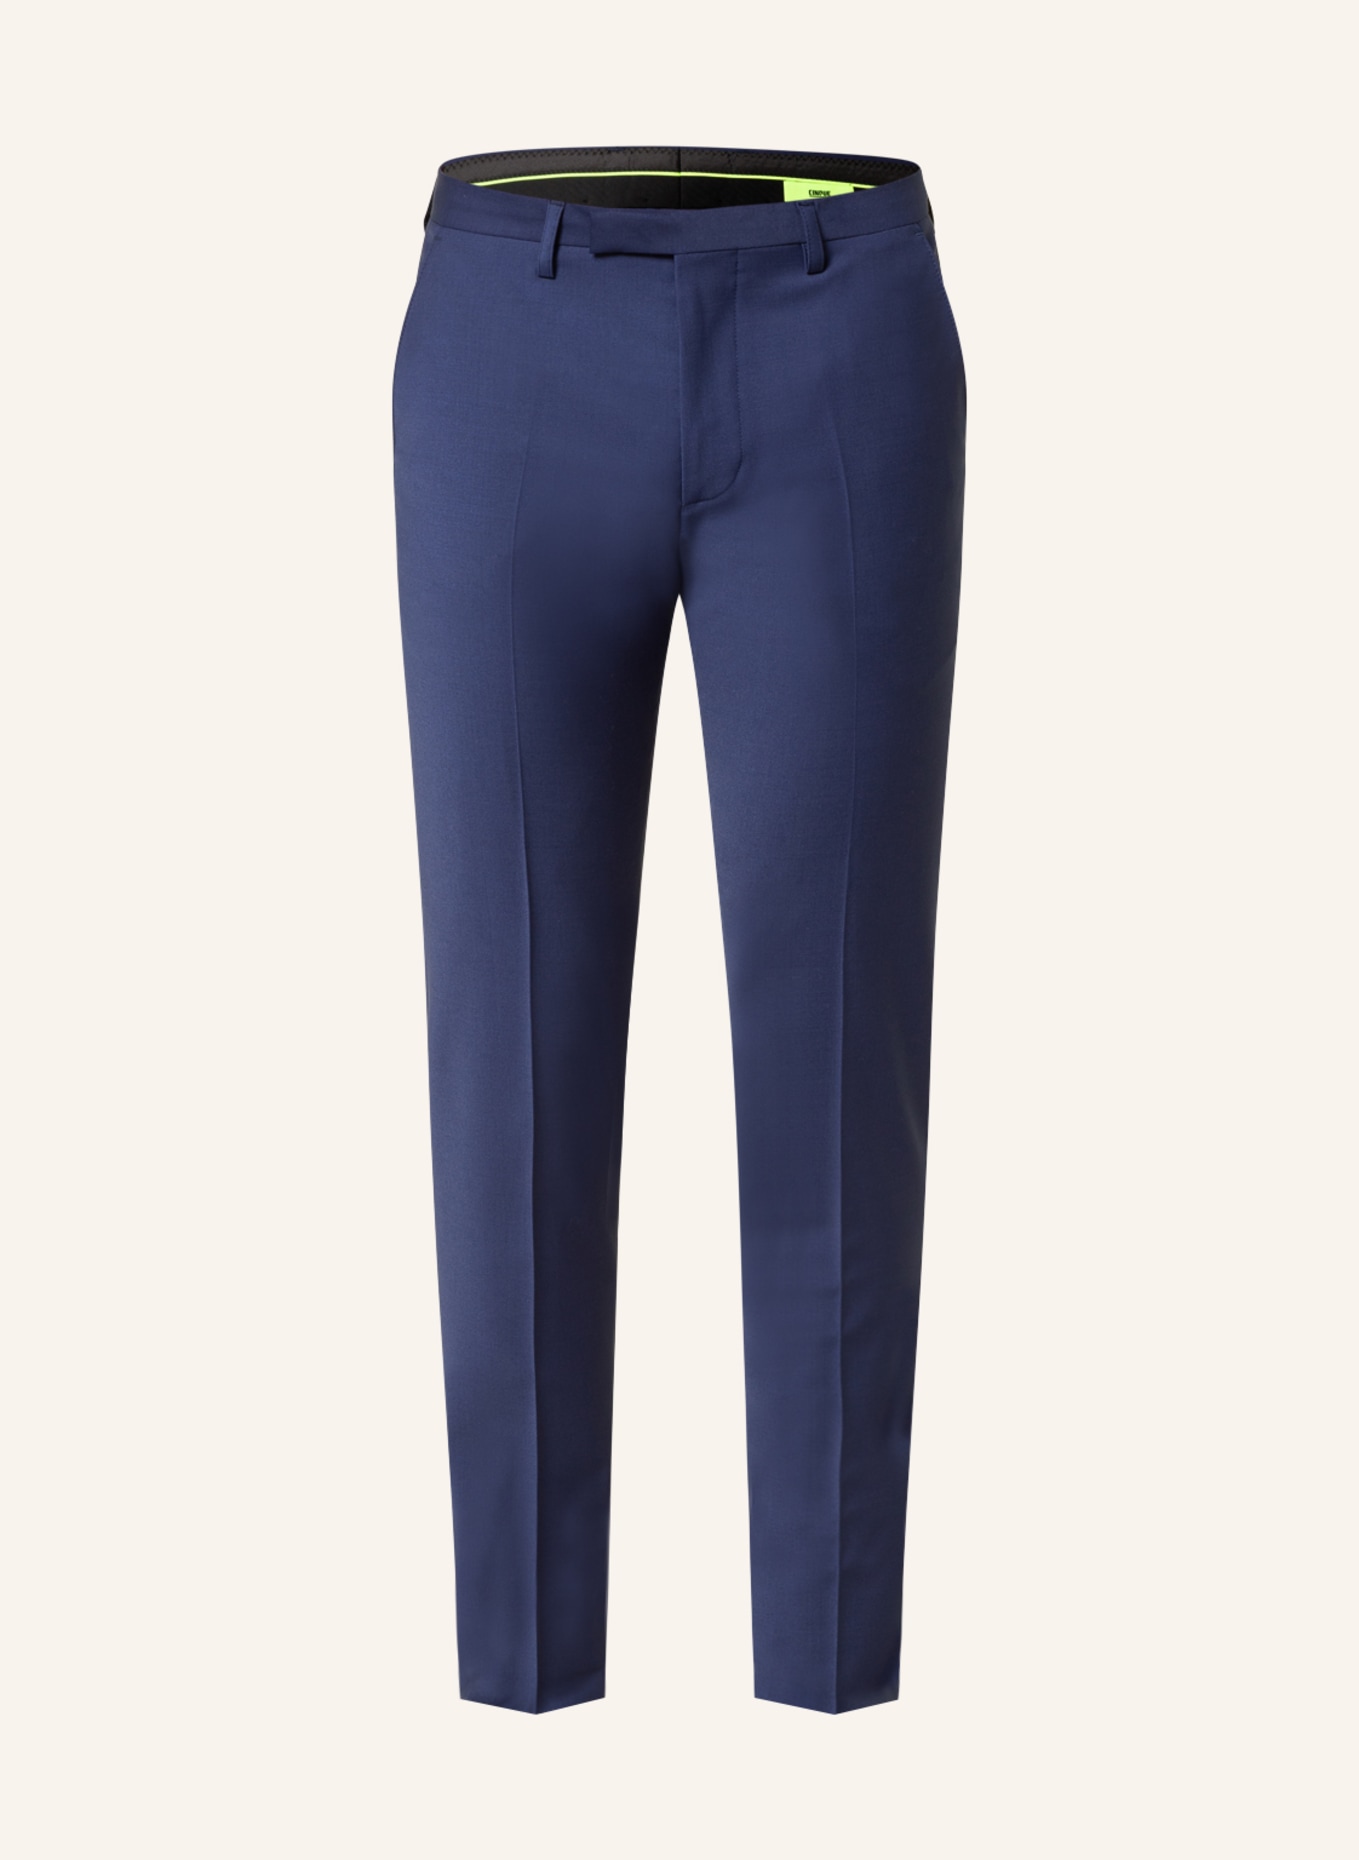 CINQUE Anzughose CICASTELLO Super Slim Fit, Farbe: 65 BLAU (Bild 1)